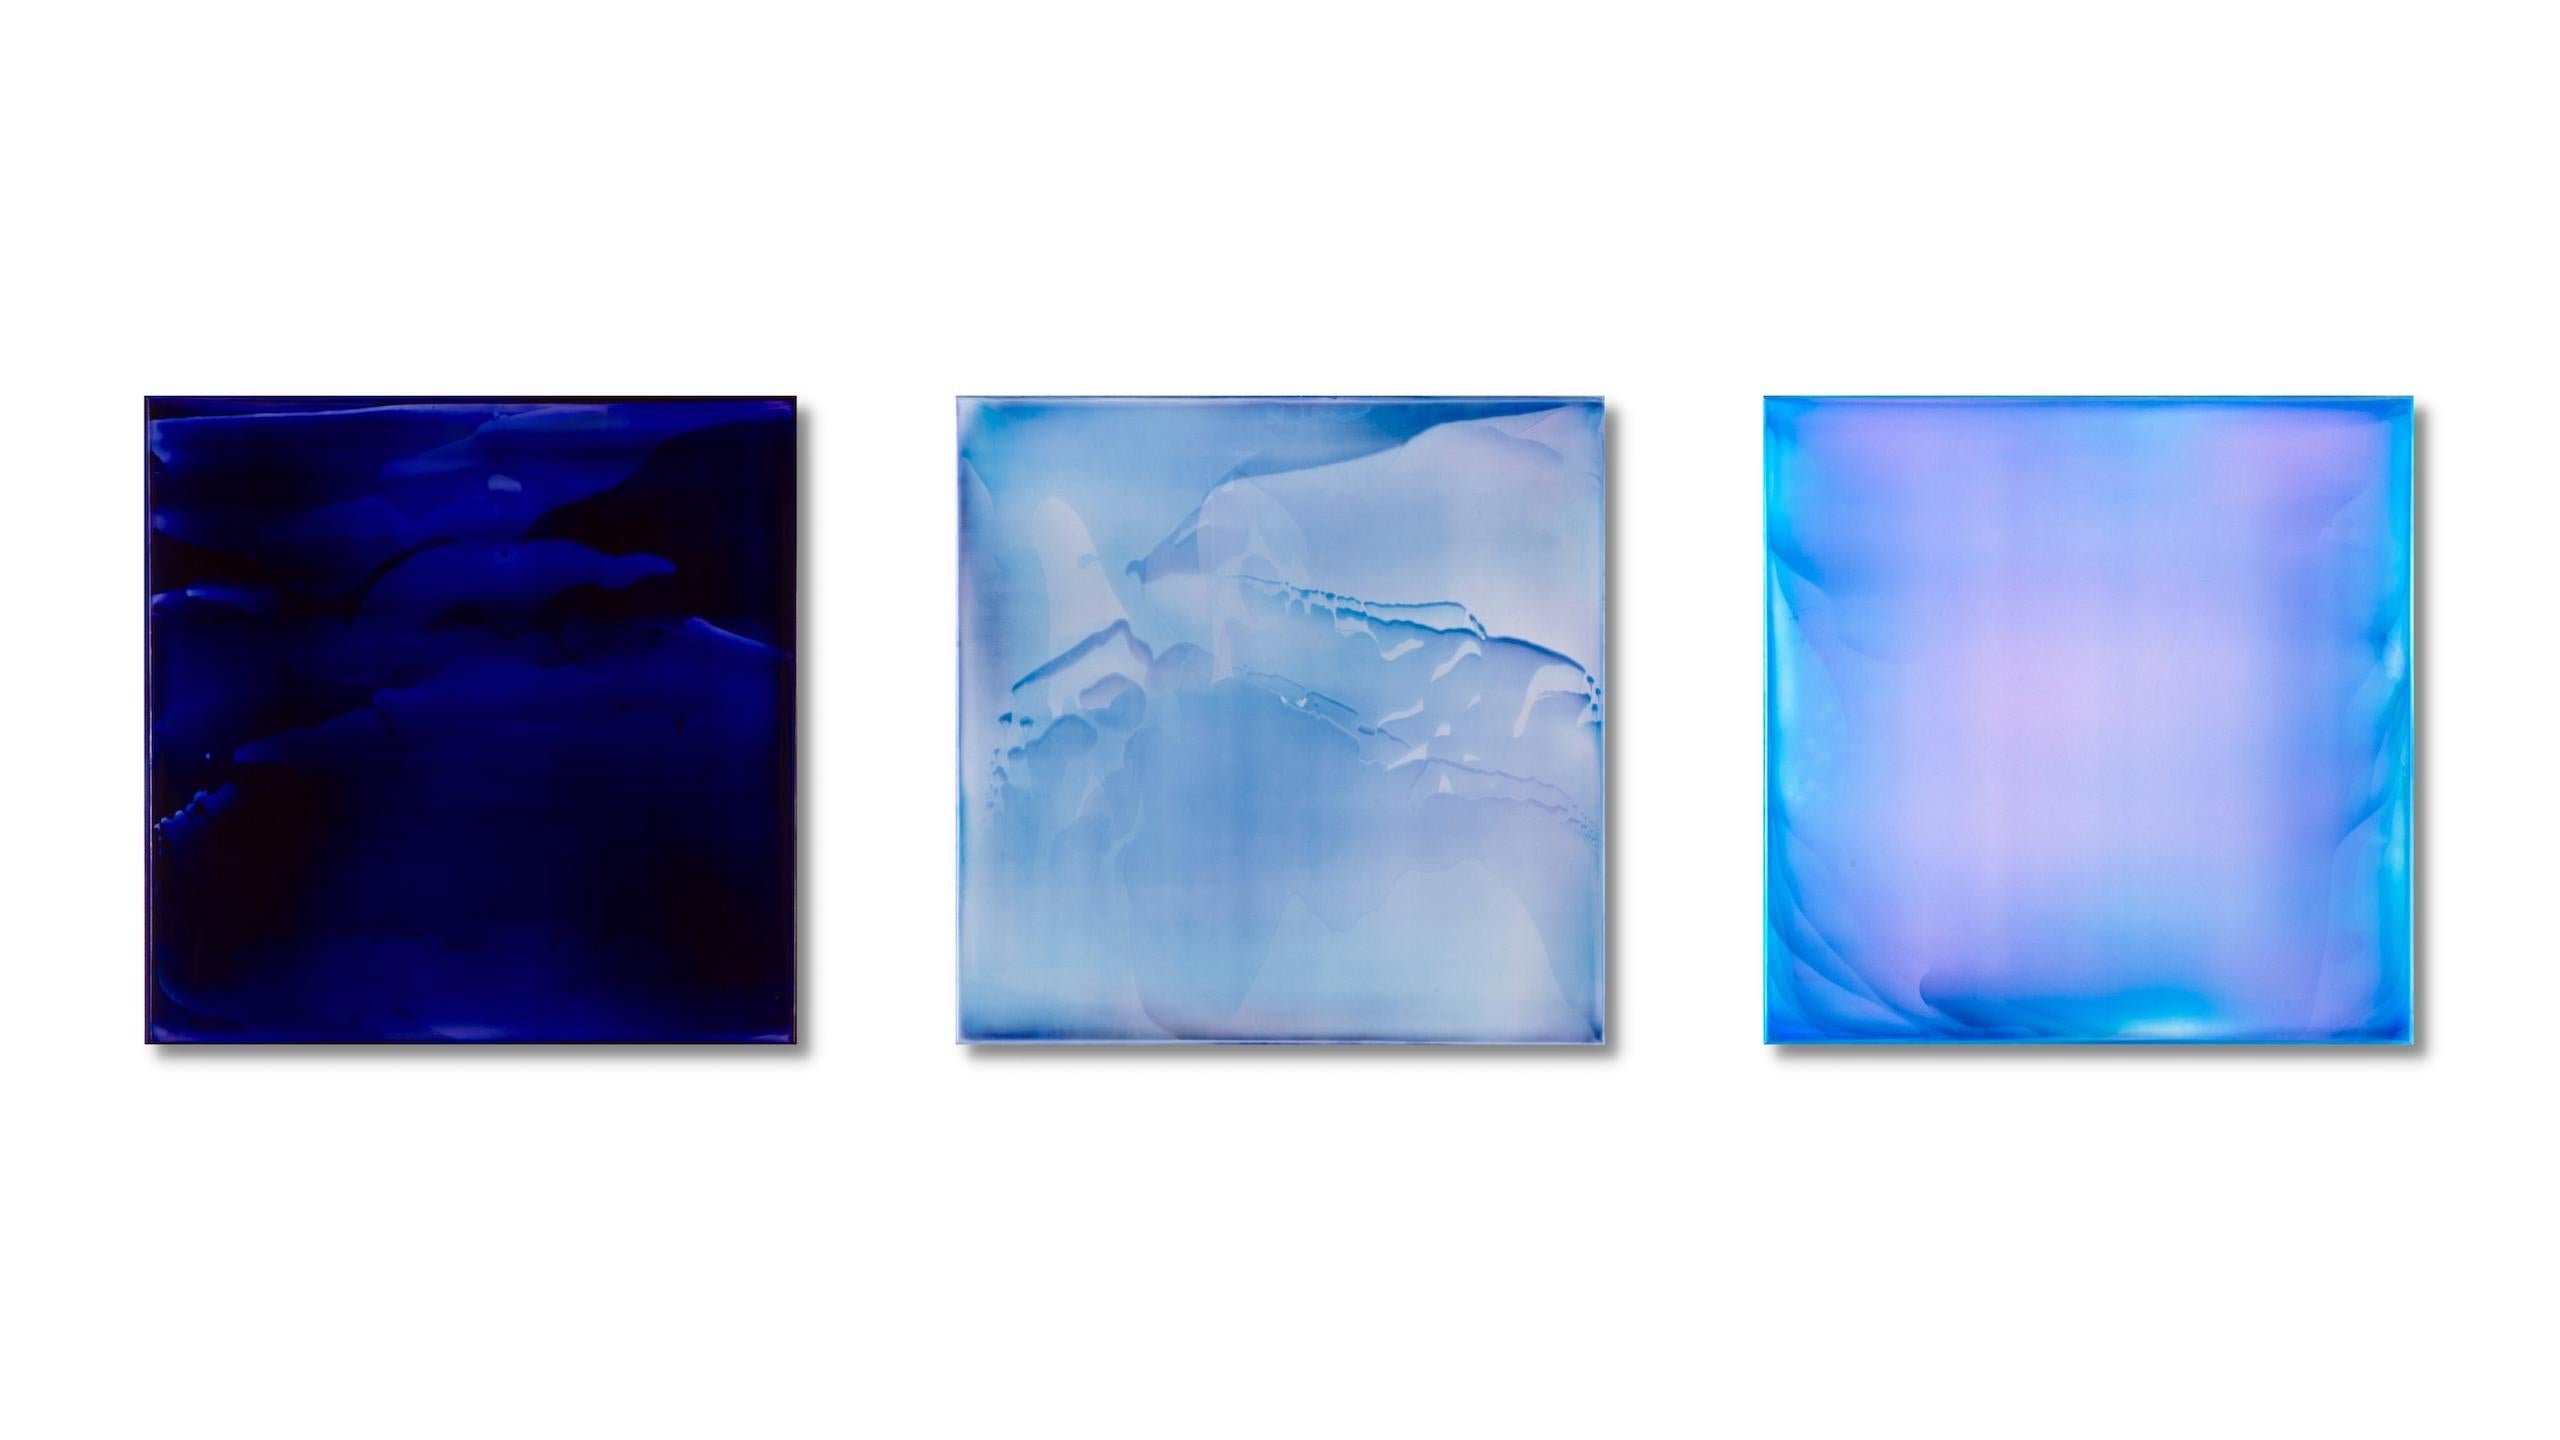 Resonance #23, 25 & 26/21 ist eine Serie von 3 Gemälden von James Lumsden. Von links nach rechts setzt sie sich zusammen aus:
*Resonance #23/21, ein einzigartiges Acryl auf Leinwand mit glänzender Oberfläche
*Resonance #25/21, ein einzigartiges